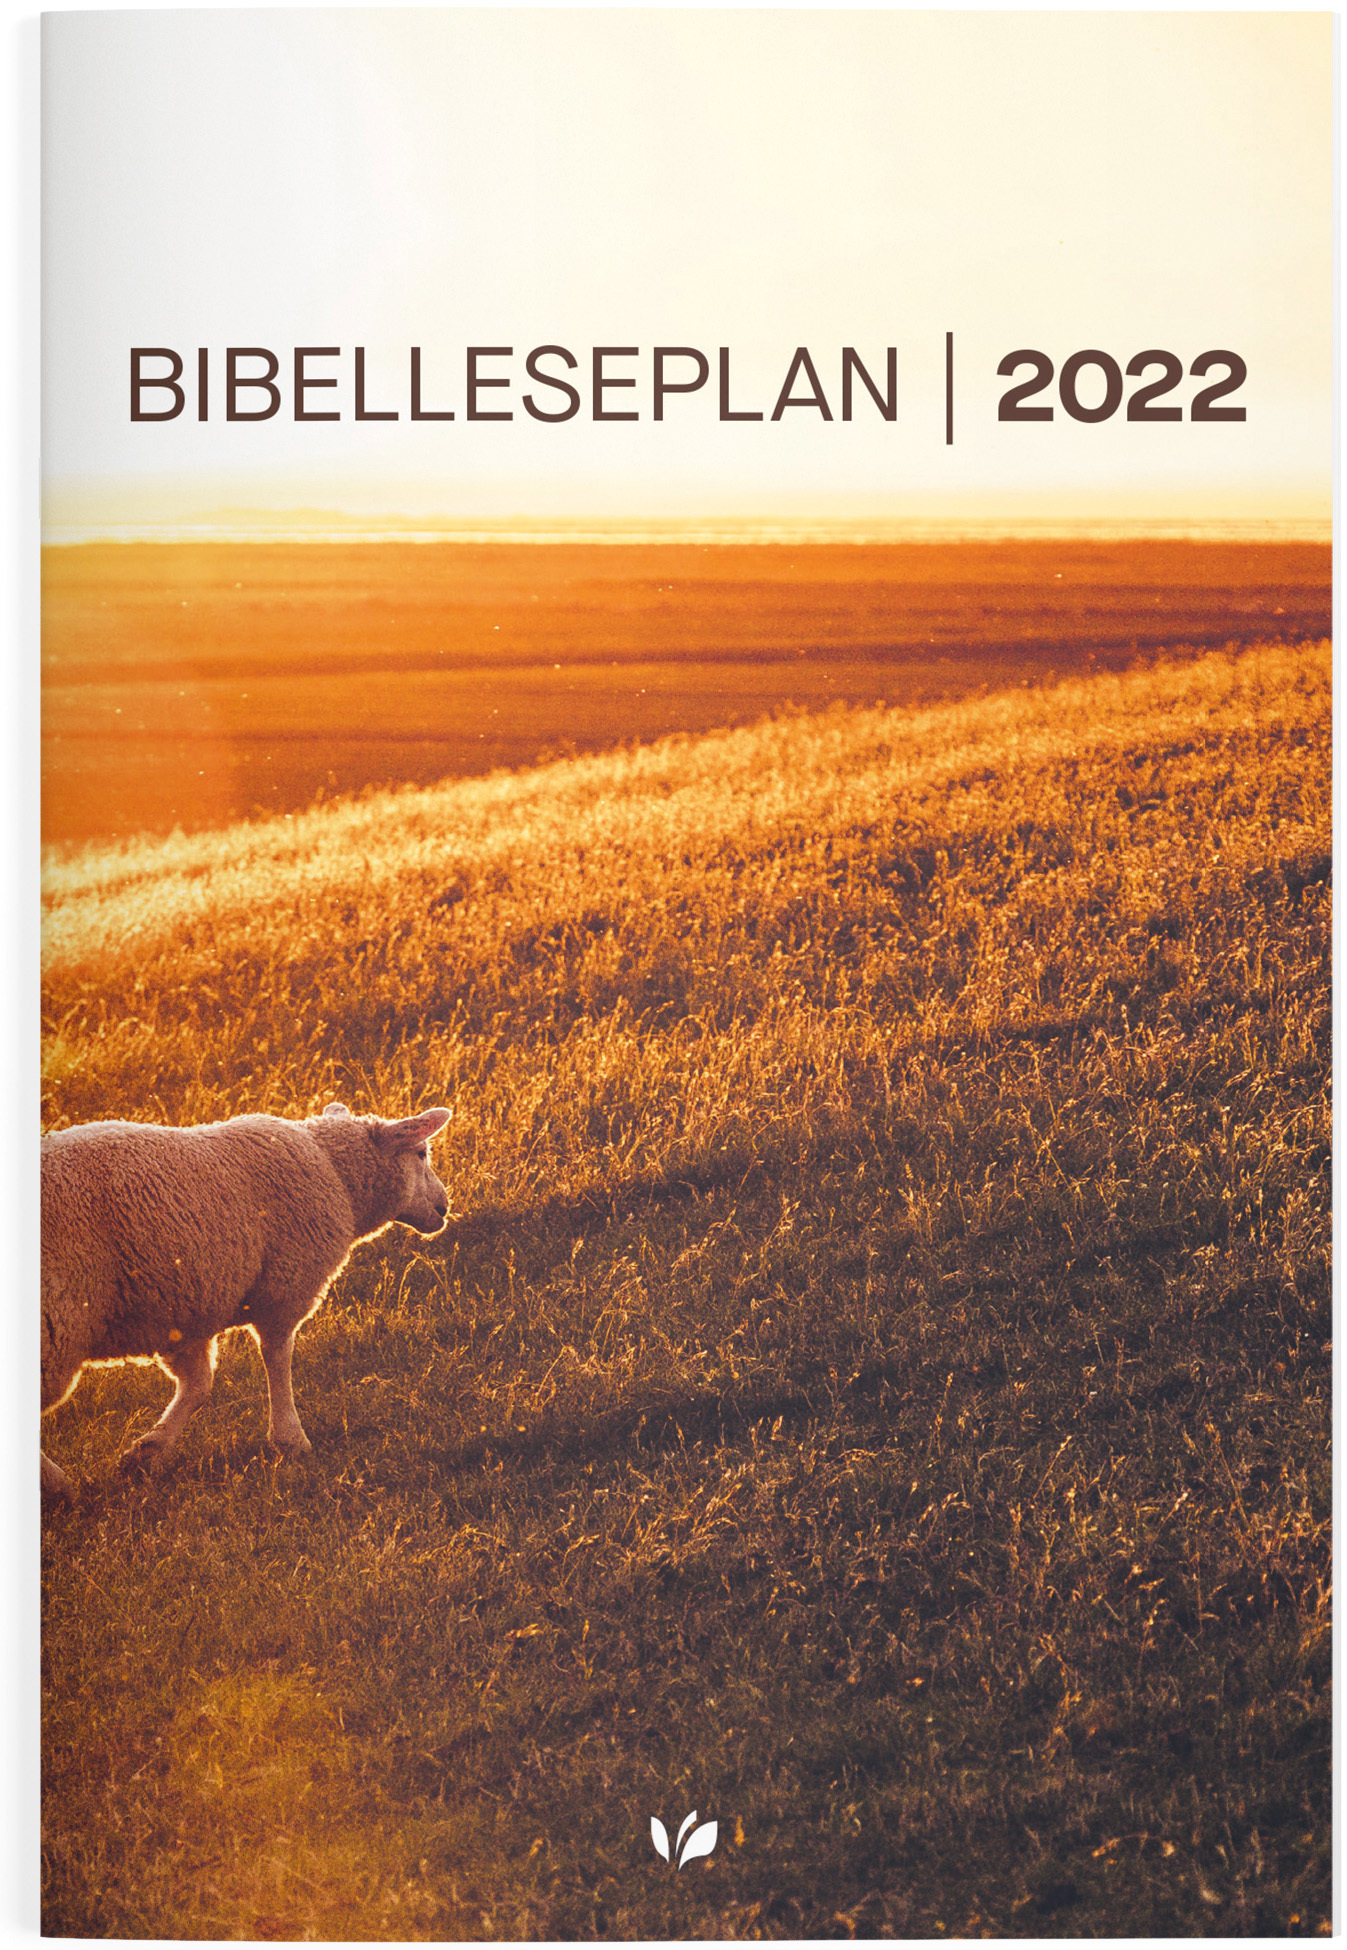 Bibelleseplan22 mock